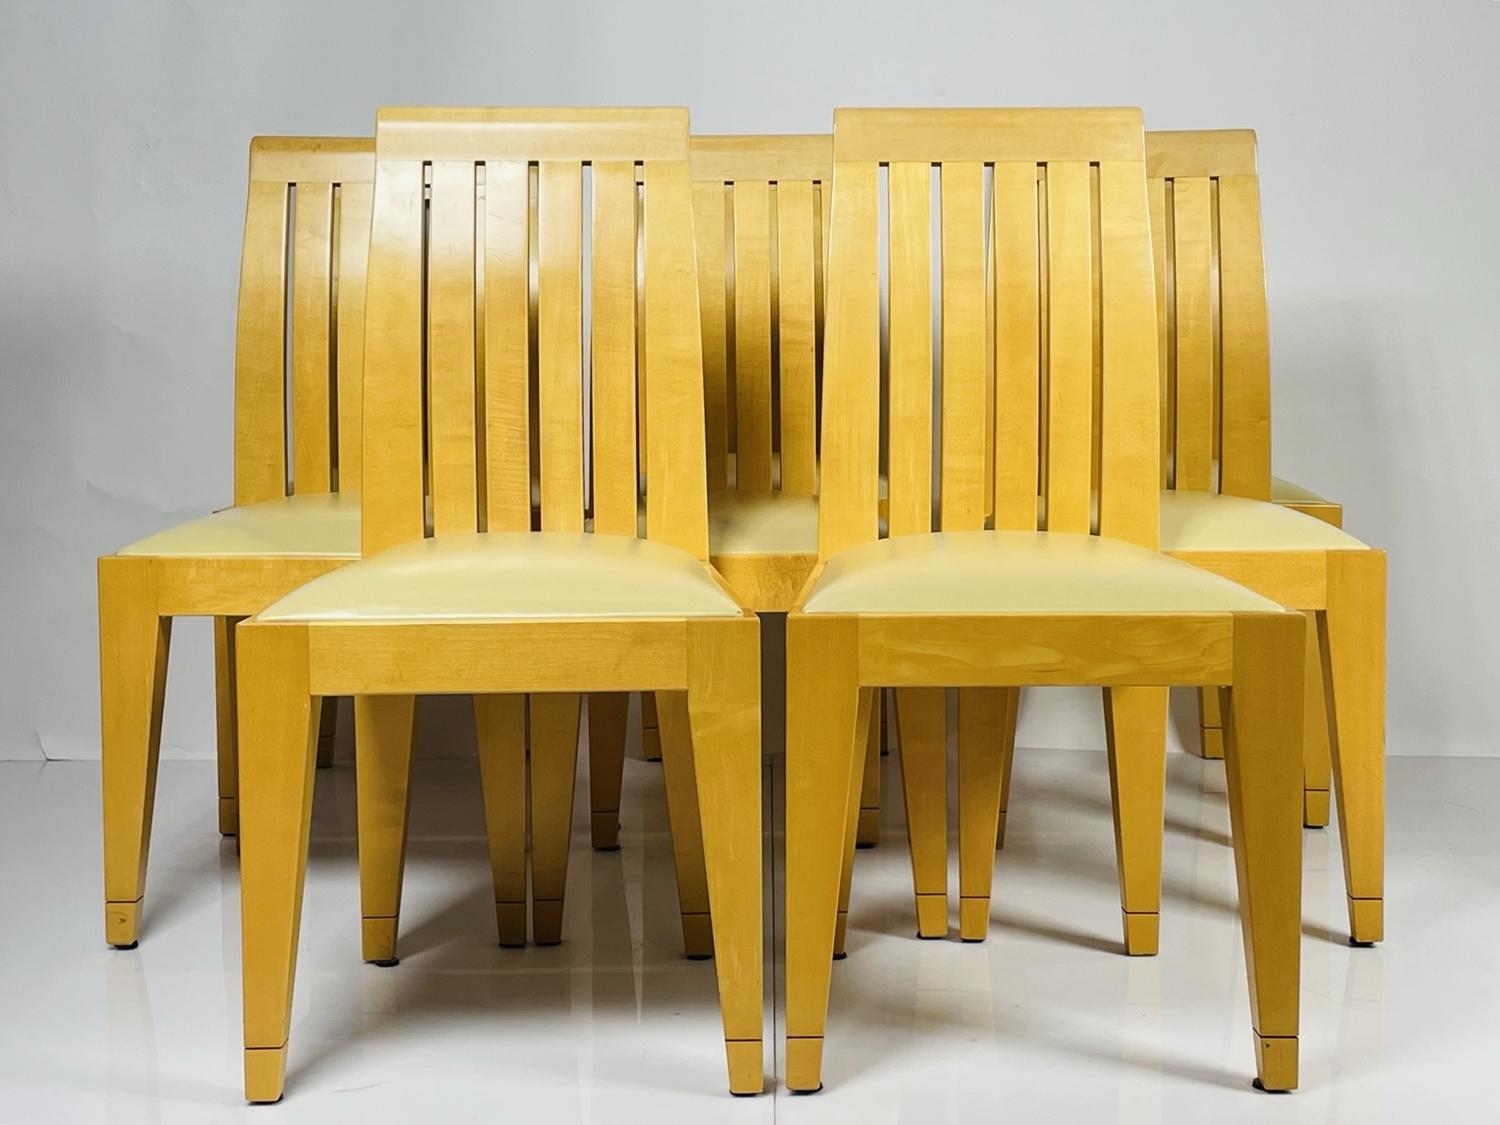 Satz von 8 Esszimmerstühlen aus blondem Holz und Lederpolsterung -
 Diese Stühle sind die perfekte Ergänzung für Ihre Esszimmermöbel-Kollektion! Aus Massivholz gefertigt, bieten diese Stühle ein schickes und stilvolles Design, das sich nahtlos in